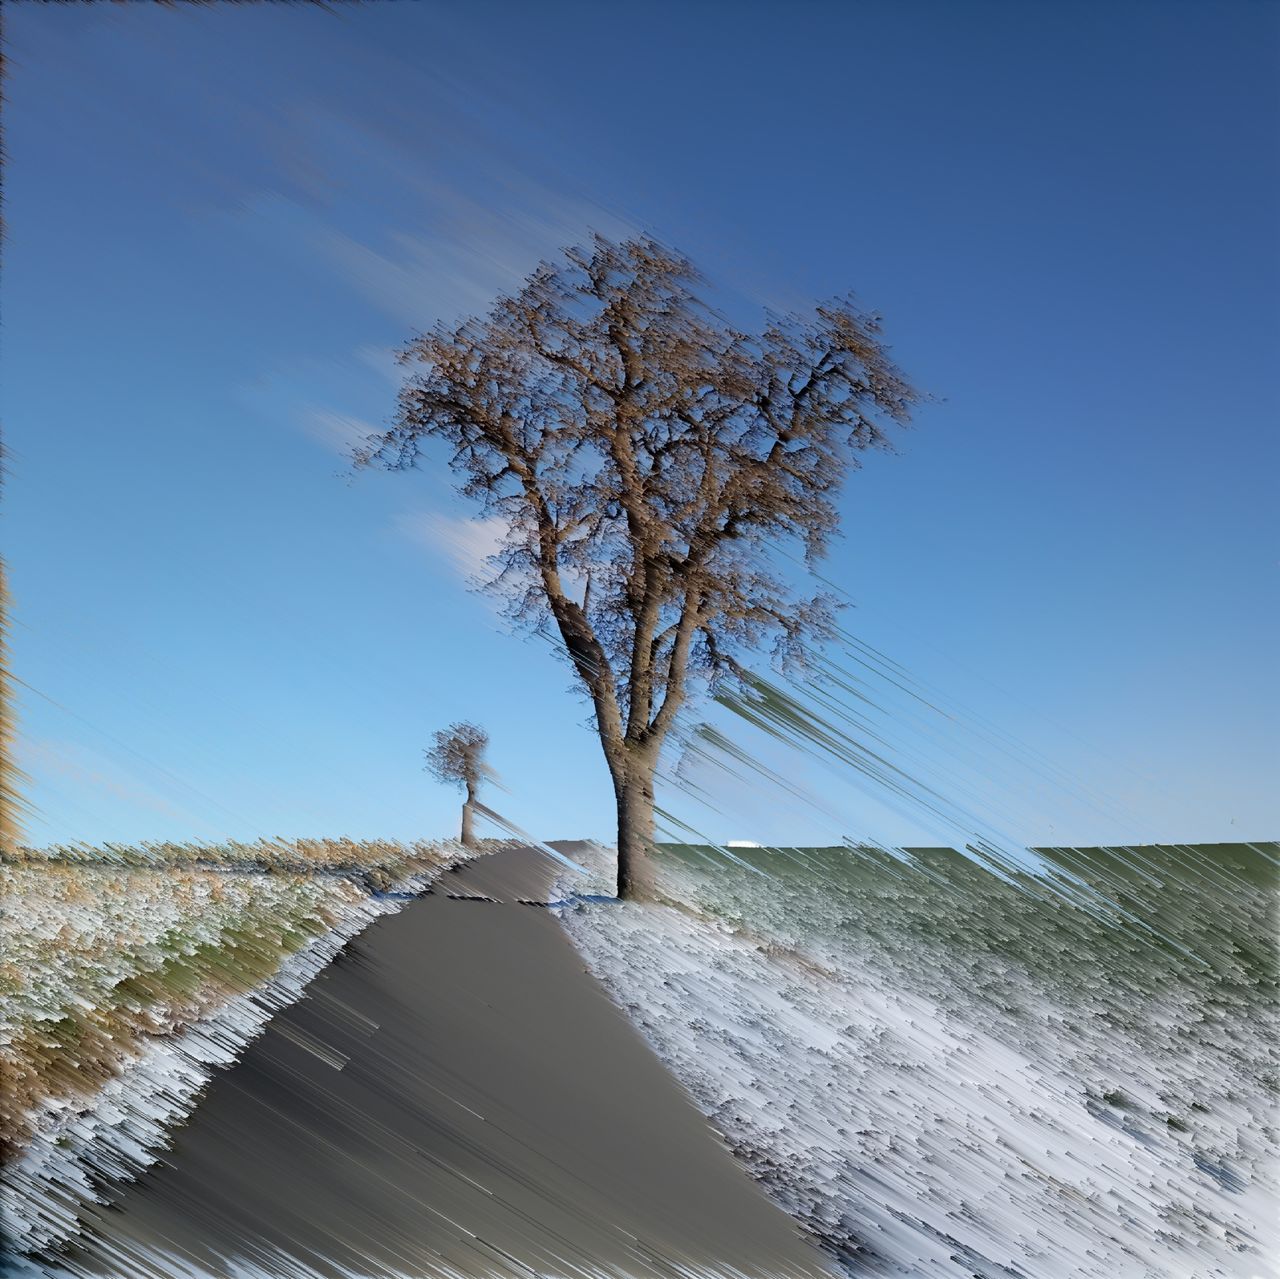 Birnbaum neben leicht verschneitem grün durchschimmerndem Wegrand an geteertem Weg vor blauem, fast unbewölktem Himmel, abstrakt verfremdet durcu lineare Pixelwiederholung in einem von links oben nach rechts unten abfallenden 45 Grad Winkel.